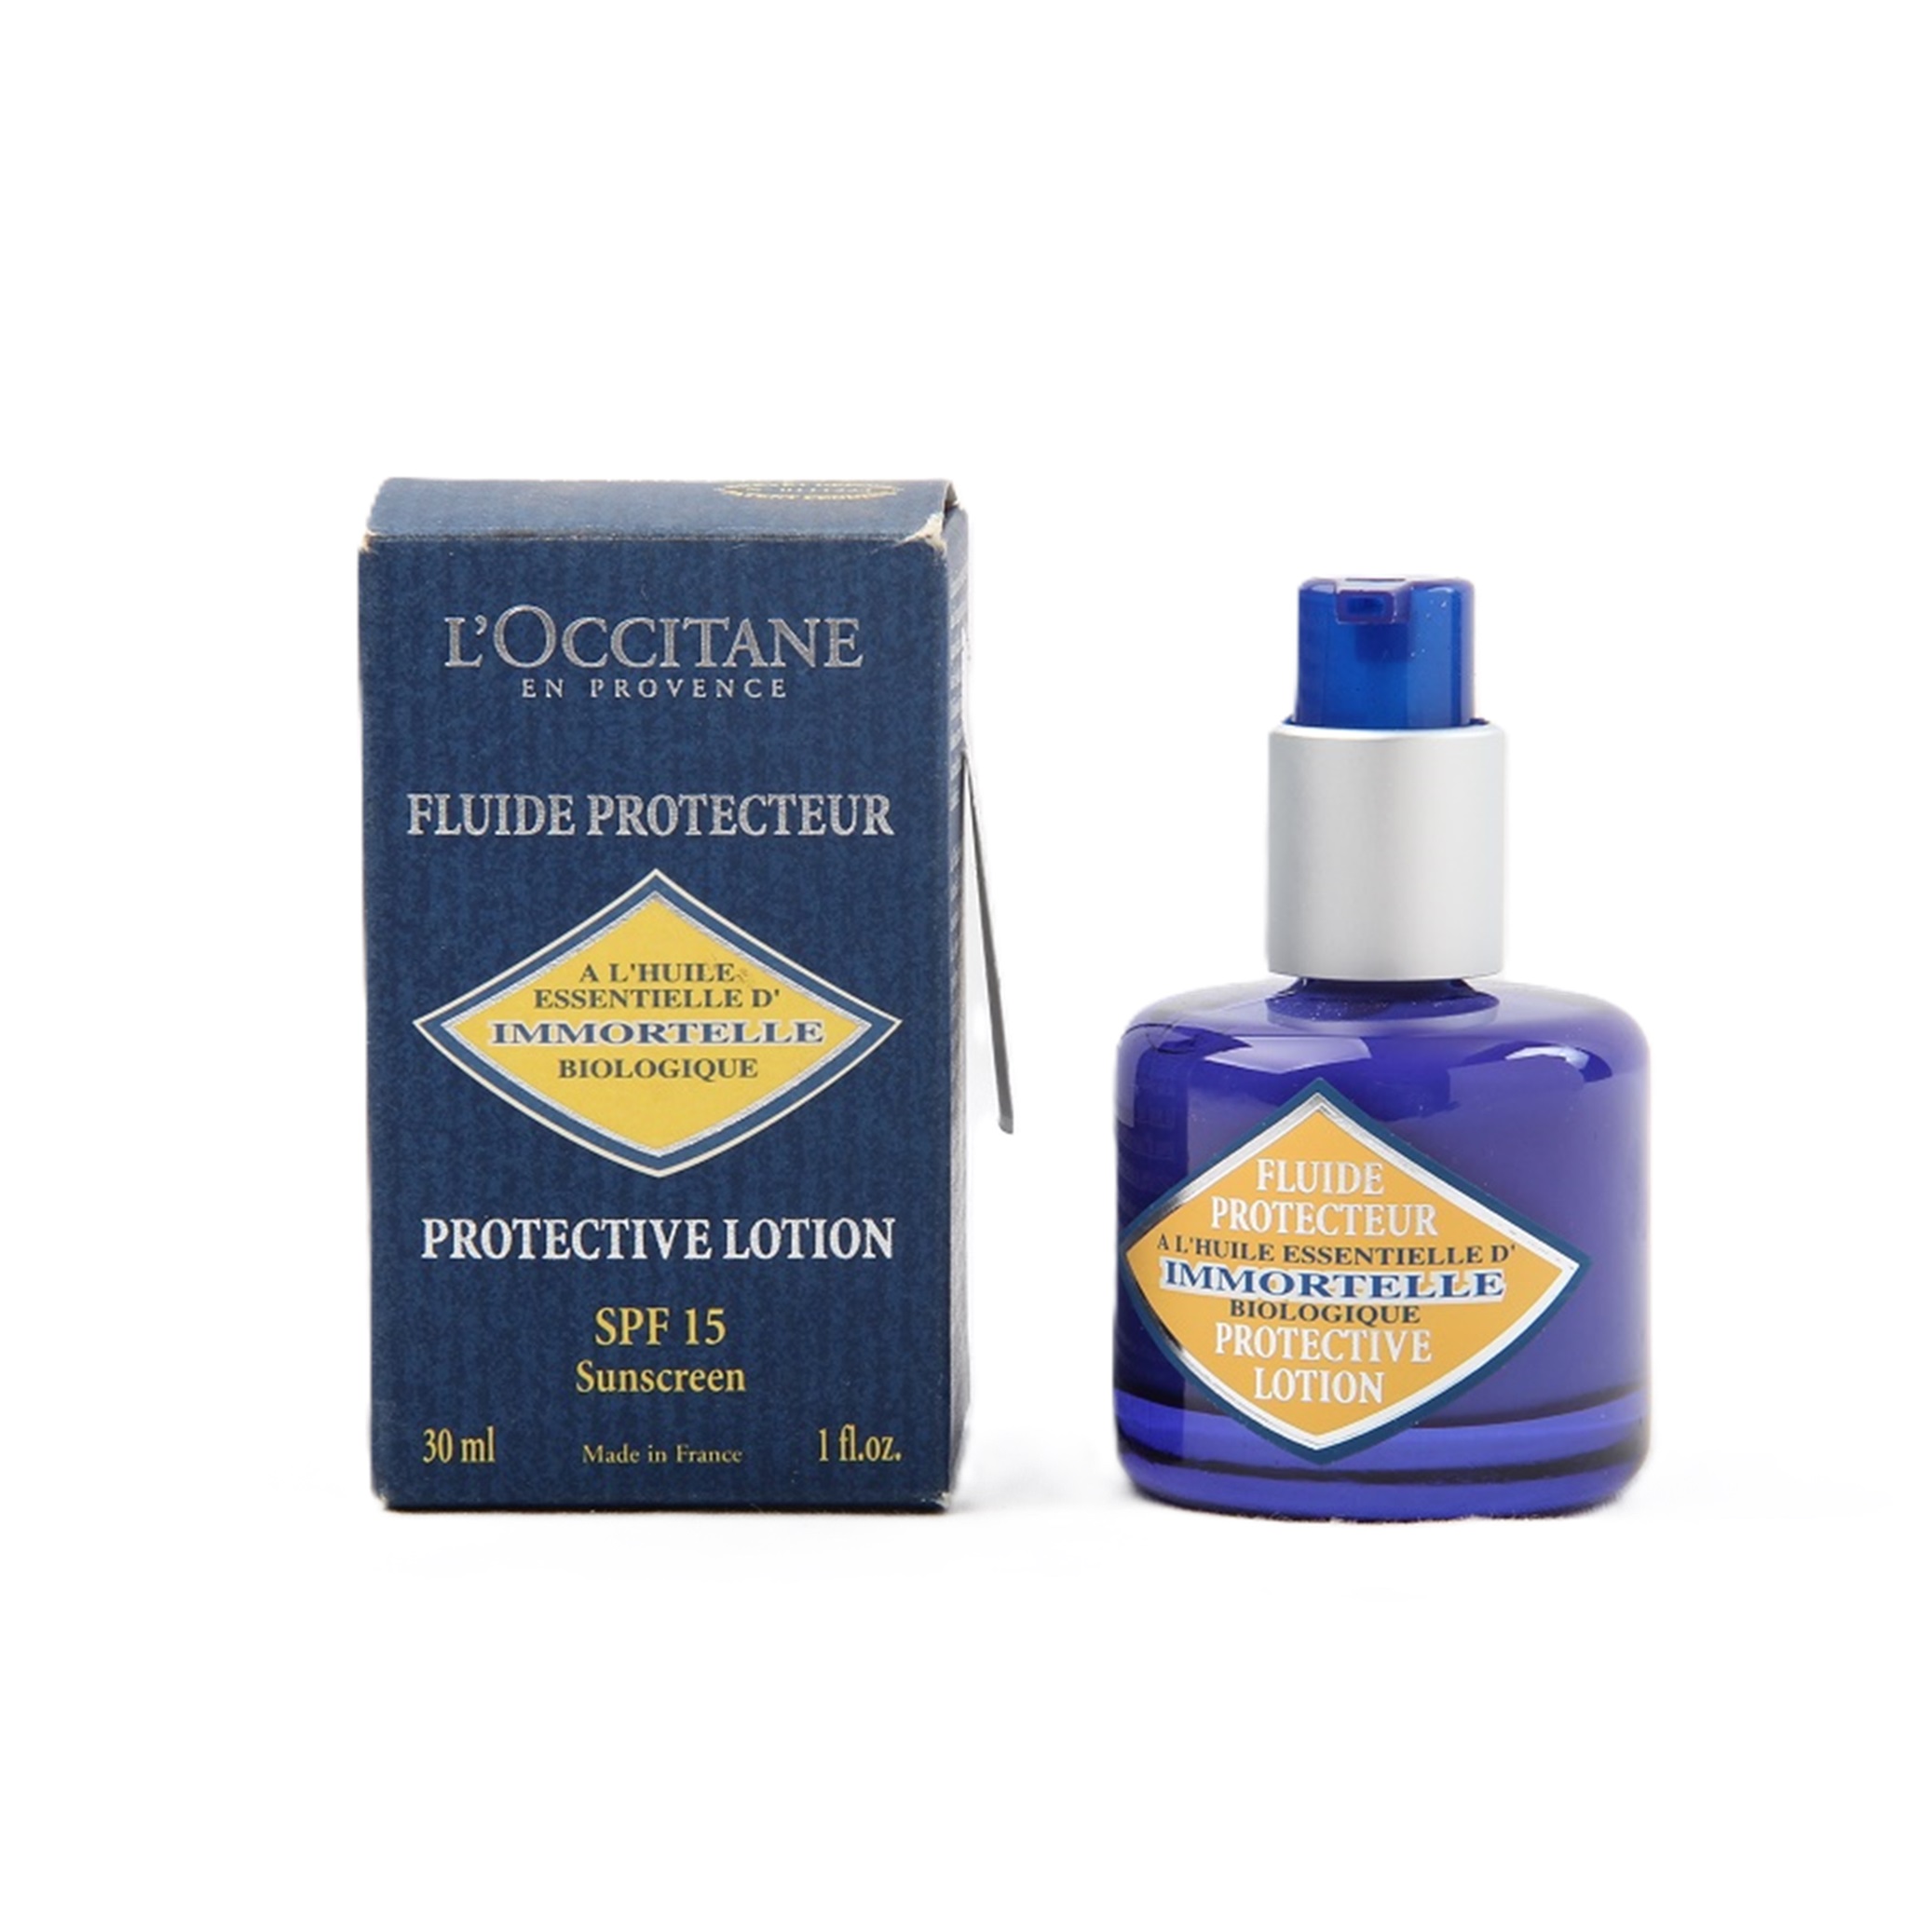 Loccitane Fluide Protecteur sunscreen SPF 15 30ml